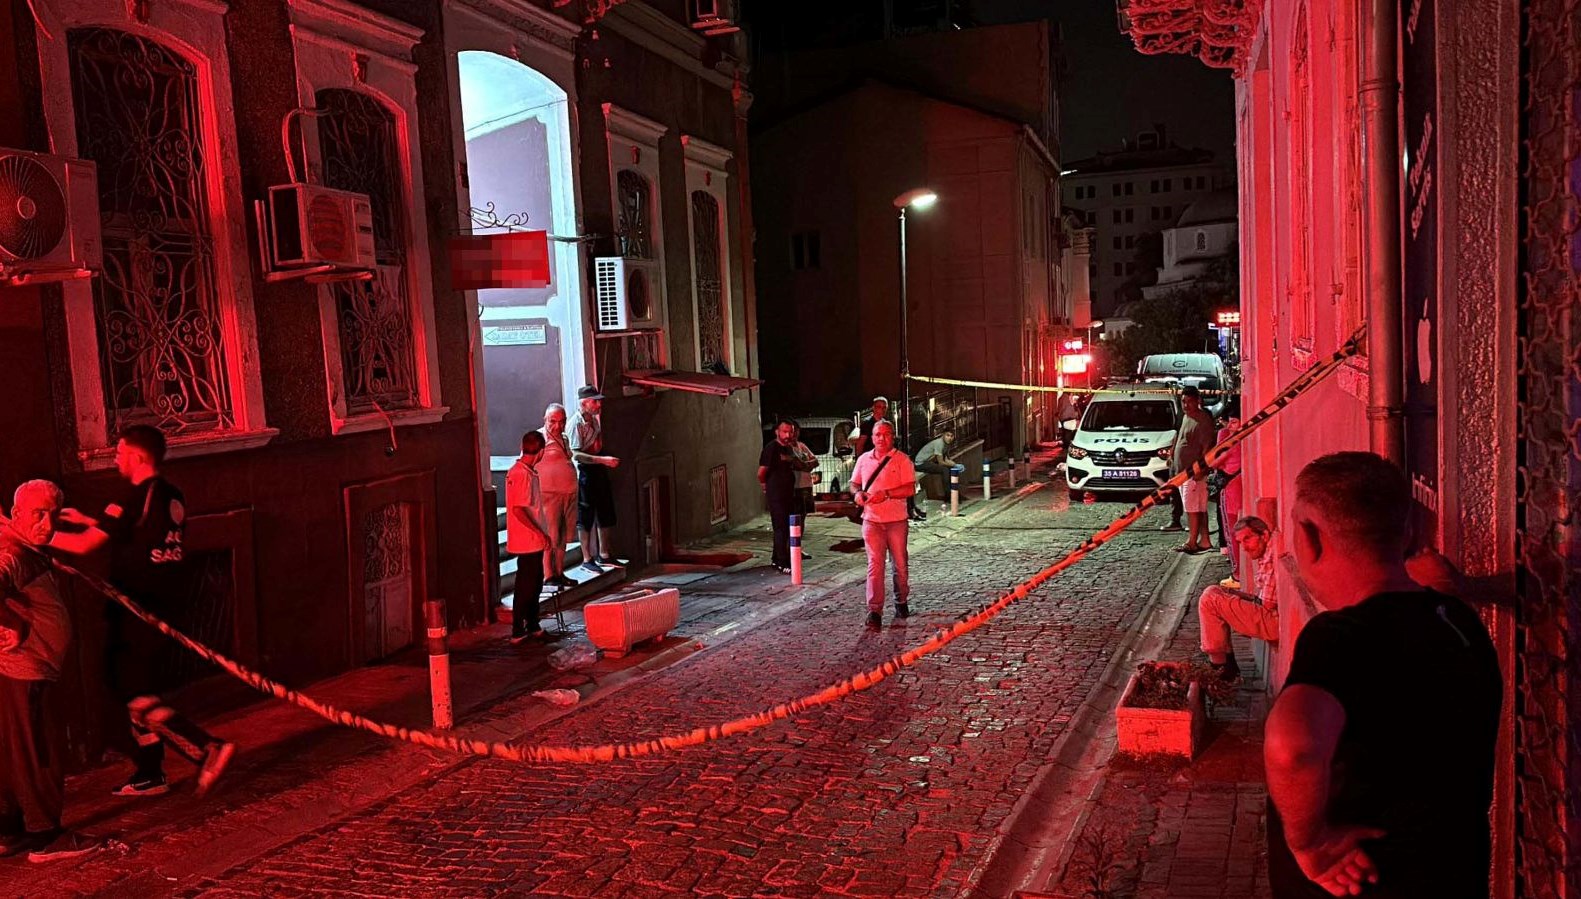 İzmir’de iki kardeşin şüpheli ölümü: Anneleriyle birlikte gittikleri otel odasından cesetleri çıktı